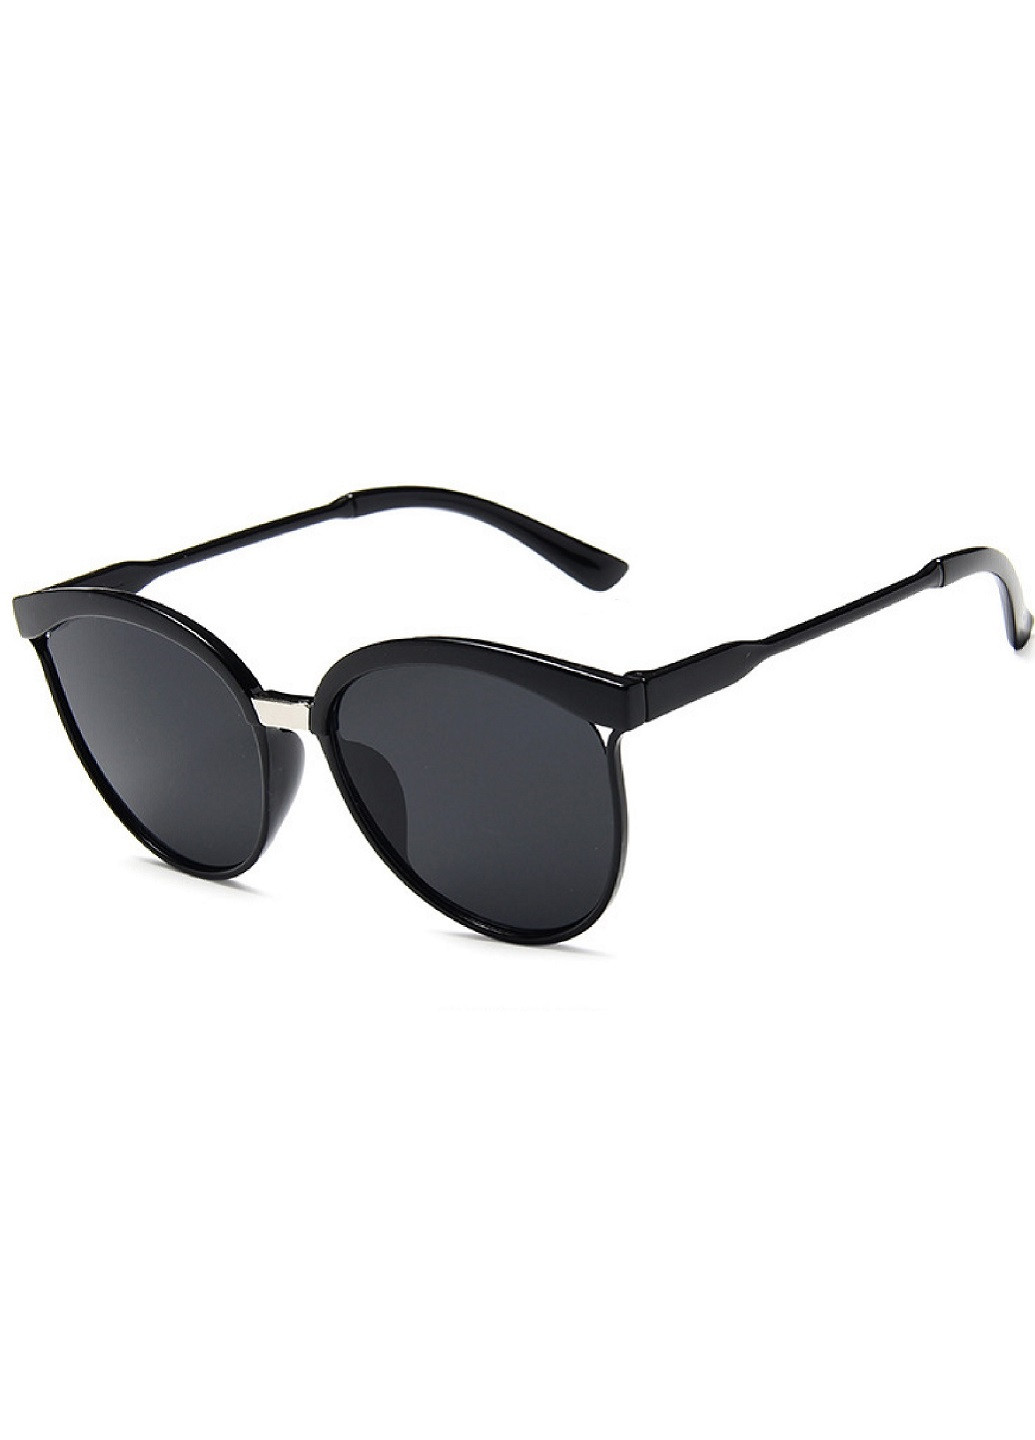 Солнцезащитные очки A&Co. чёрные